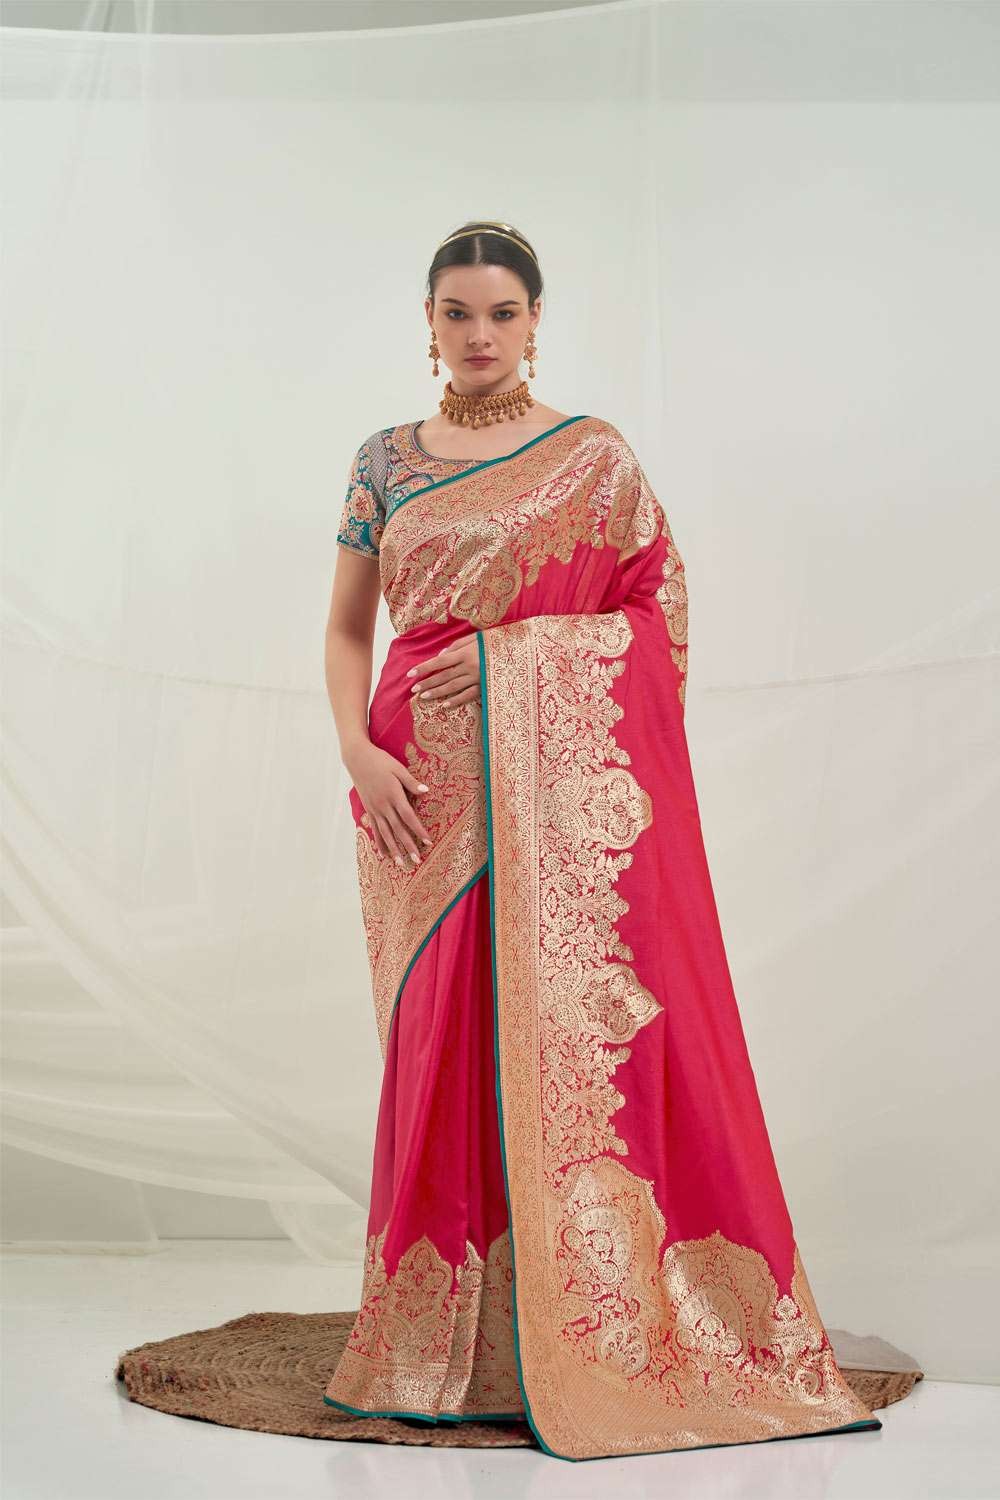 Shop the Cultural Beauty of Banarasi Pink Saree Collection.